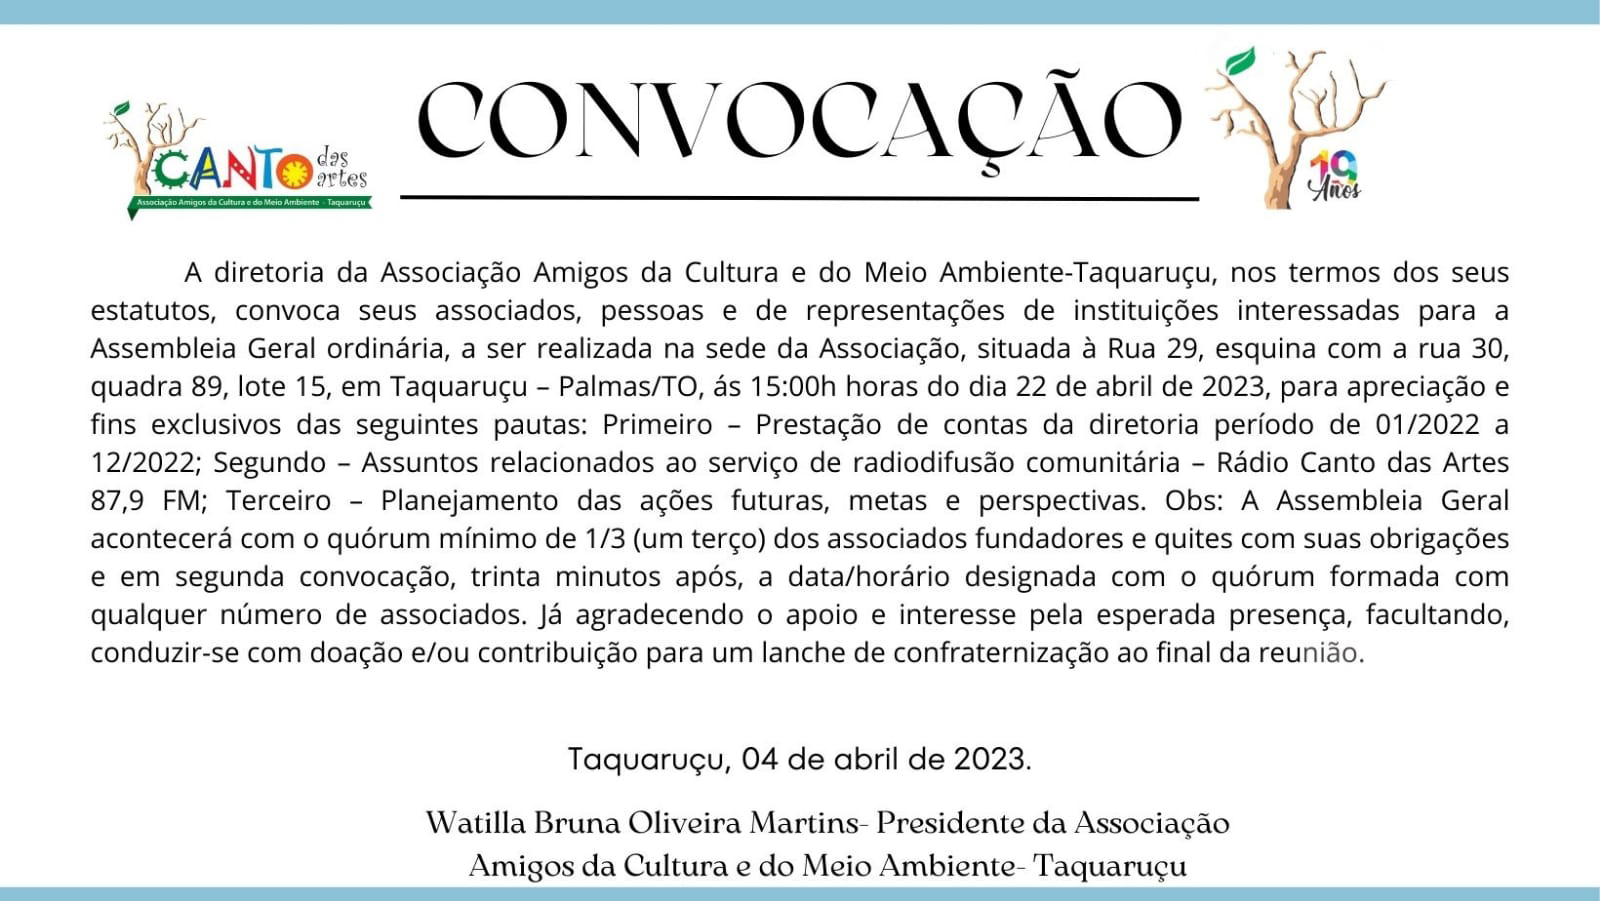 Convocação Assembléia Geral da Associação Amigos da Cultura e do Meio Ambiente - Taquaruçu